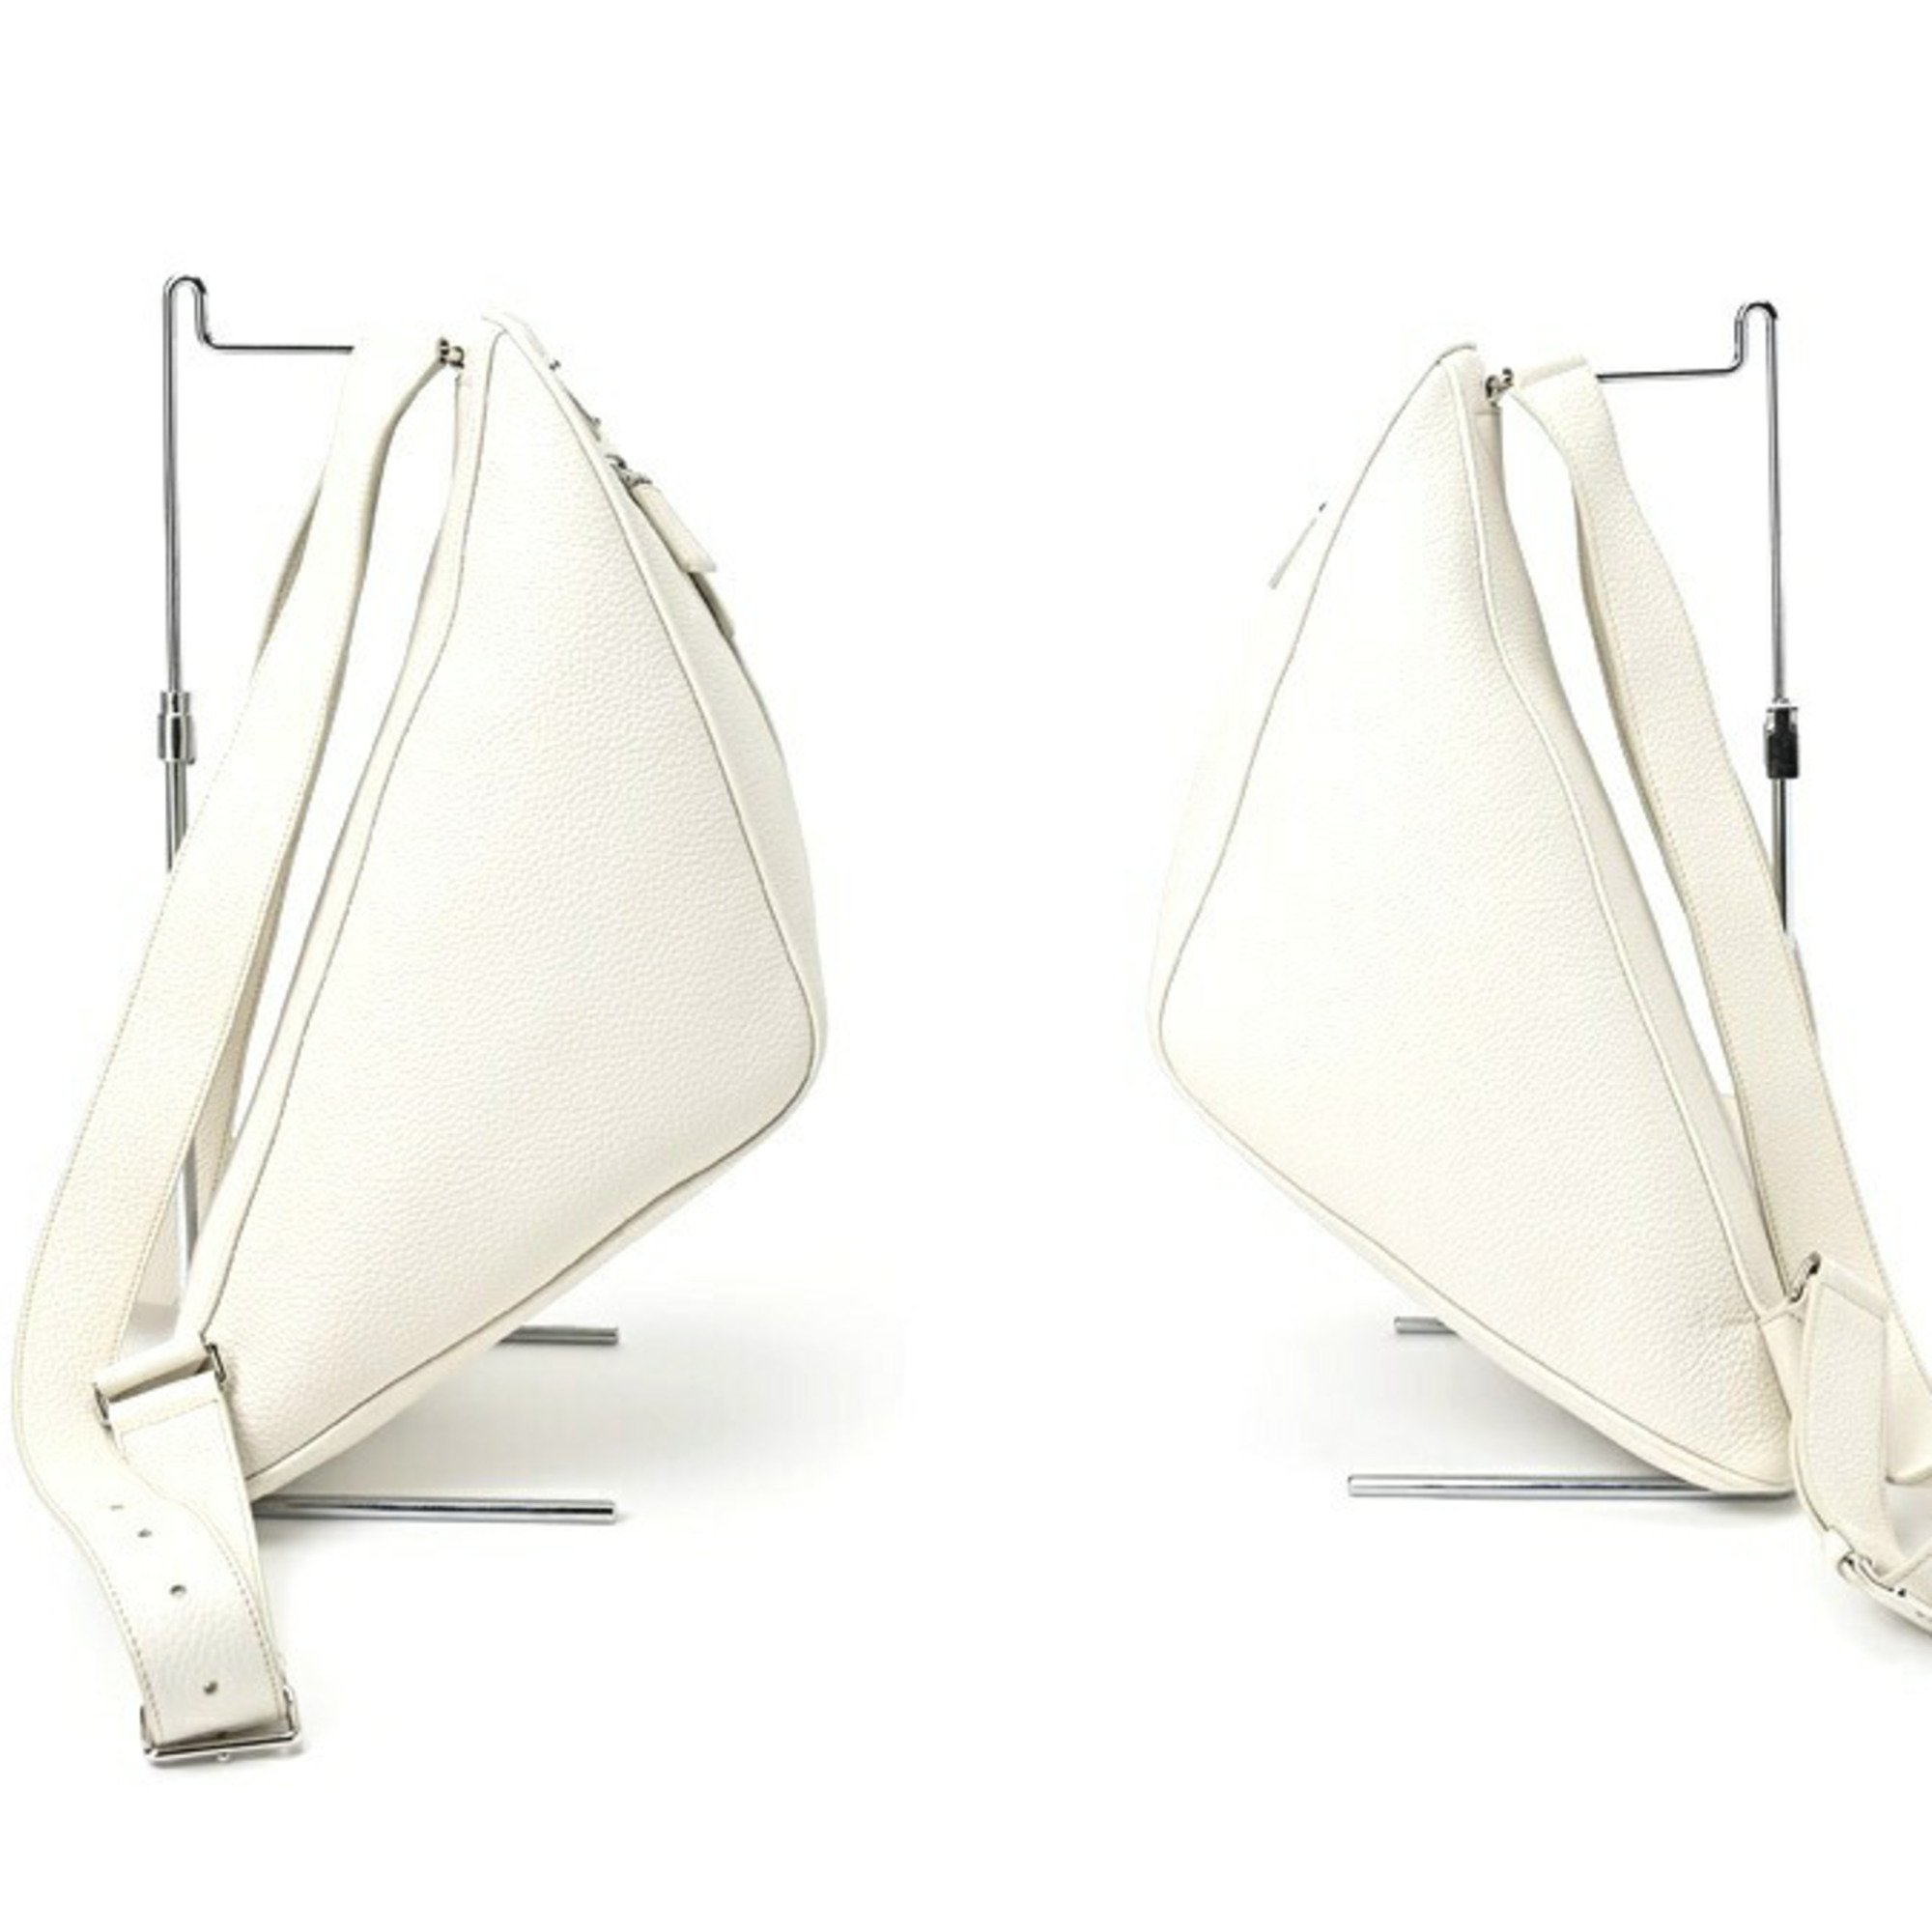 PRADA Vitello Triangle Backpack 2VZ099 Leather White S-155750